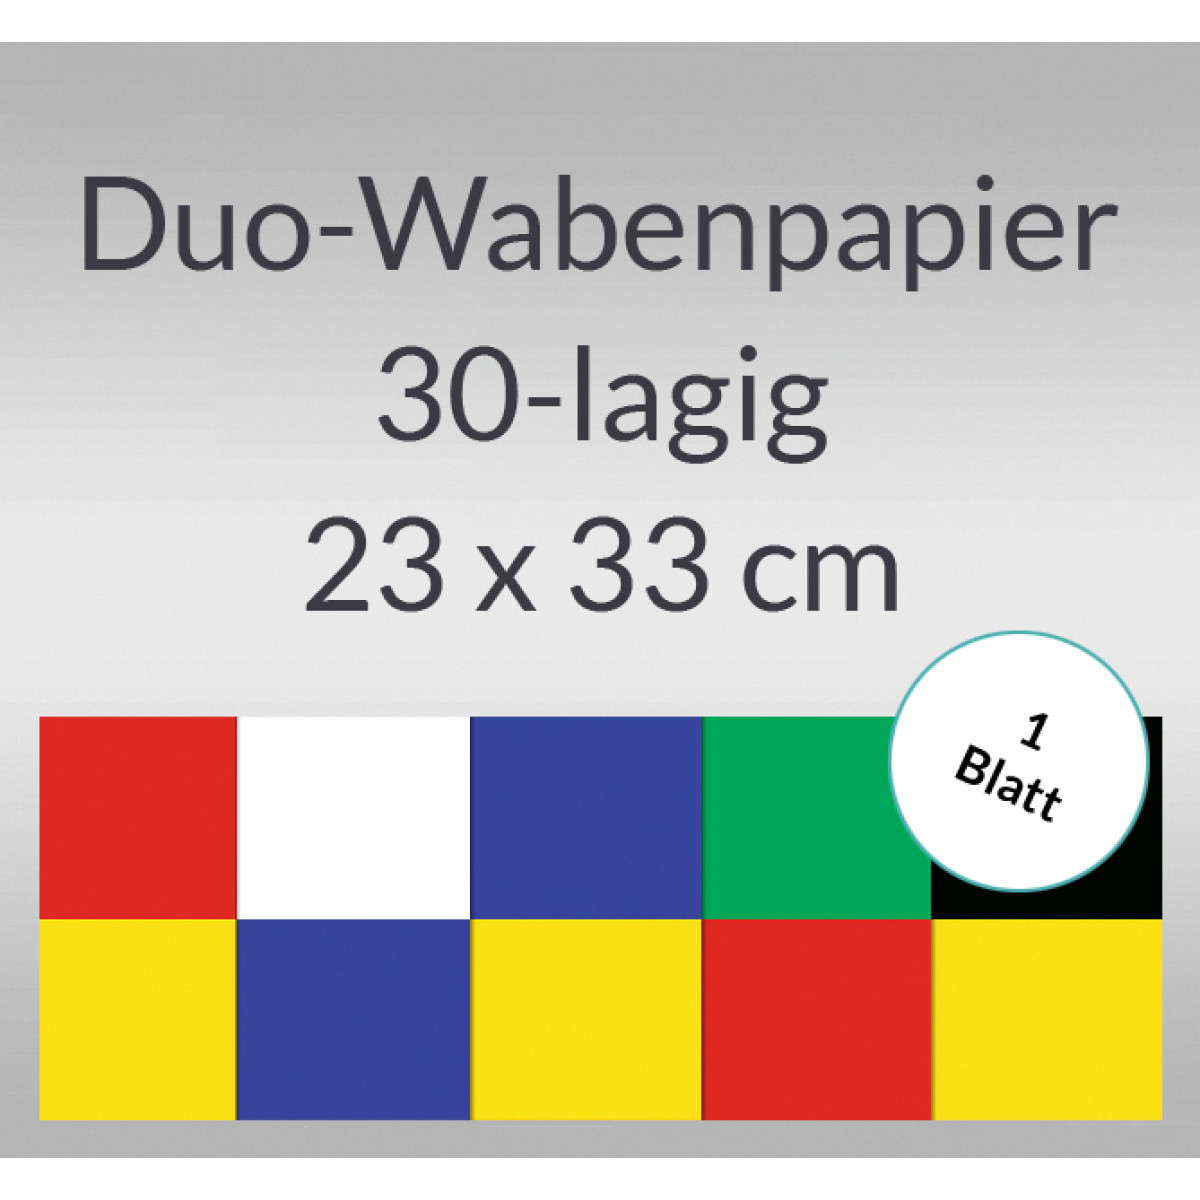 Duo-Wabenpapier 23 x 33 cm - 1 Blatt